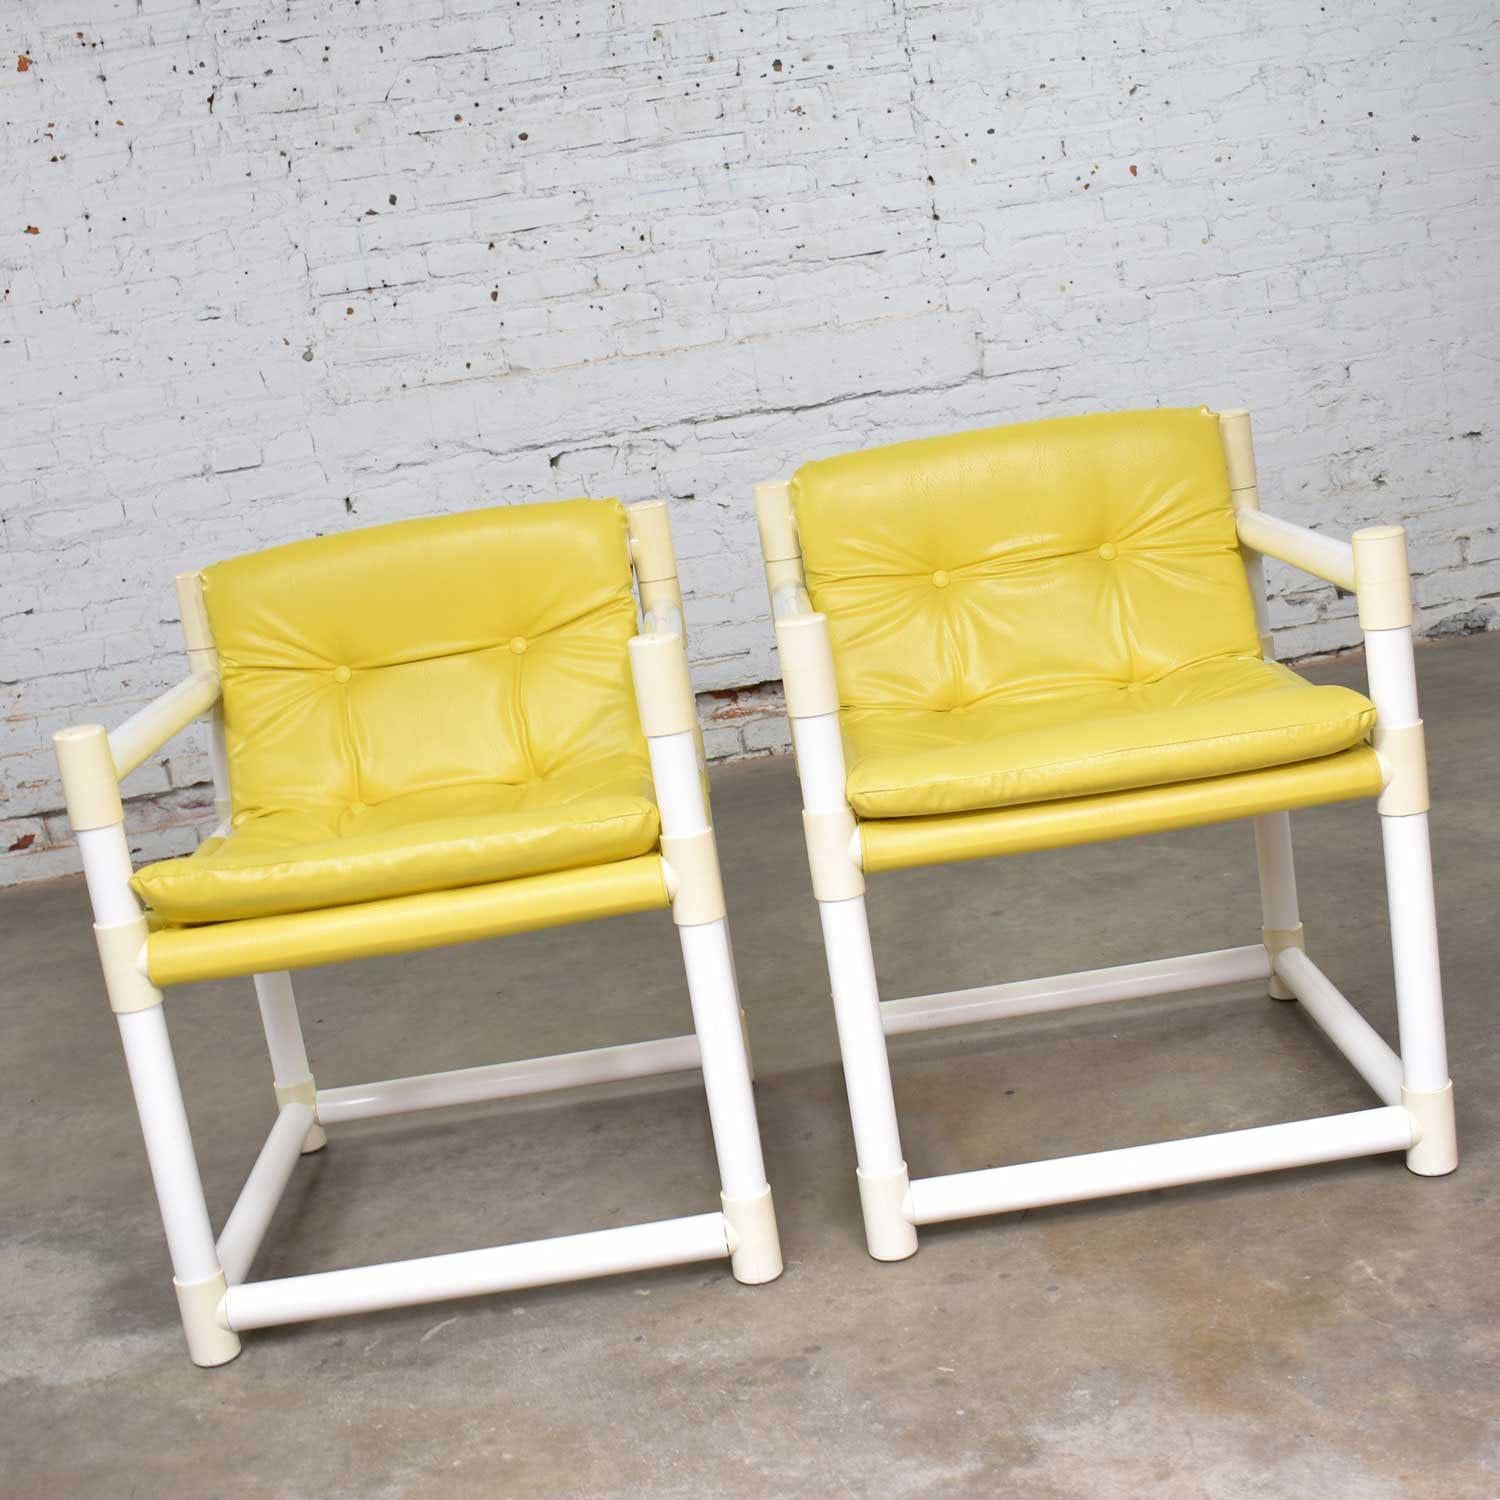 Witziges Paar MCM Mid-Century Modern Beistellstühle aus weißem PVC mit gelber Vinylpolsterung von Decorion Fun Furnishings aus Guntown, Mississippi, im Stil von Jerry Johnson für Landes Manufacturing Co. Sie sind in einem wunderbaren